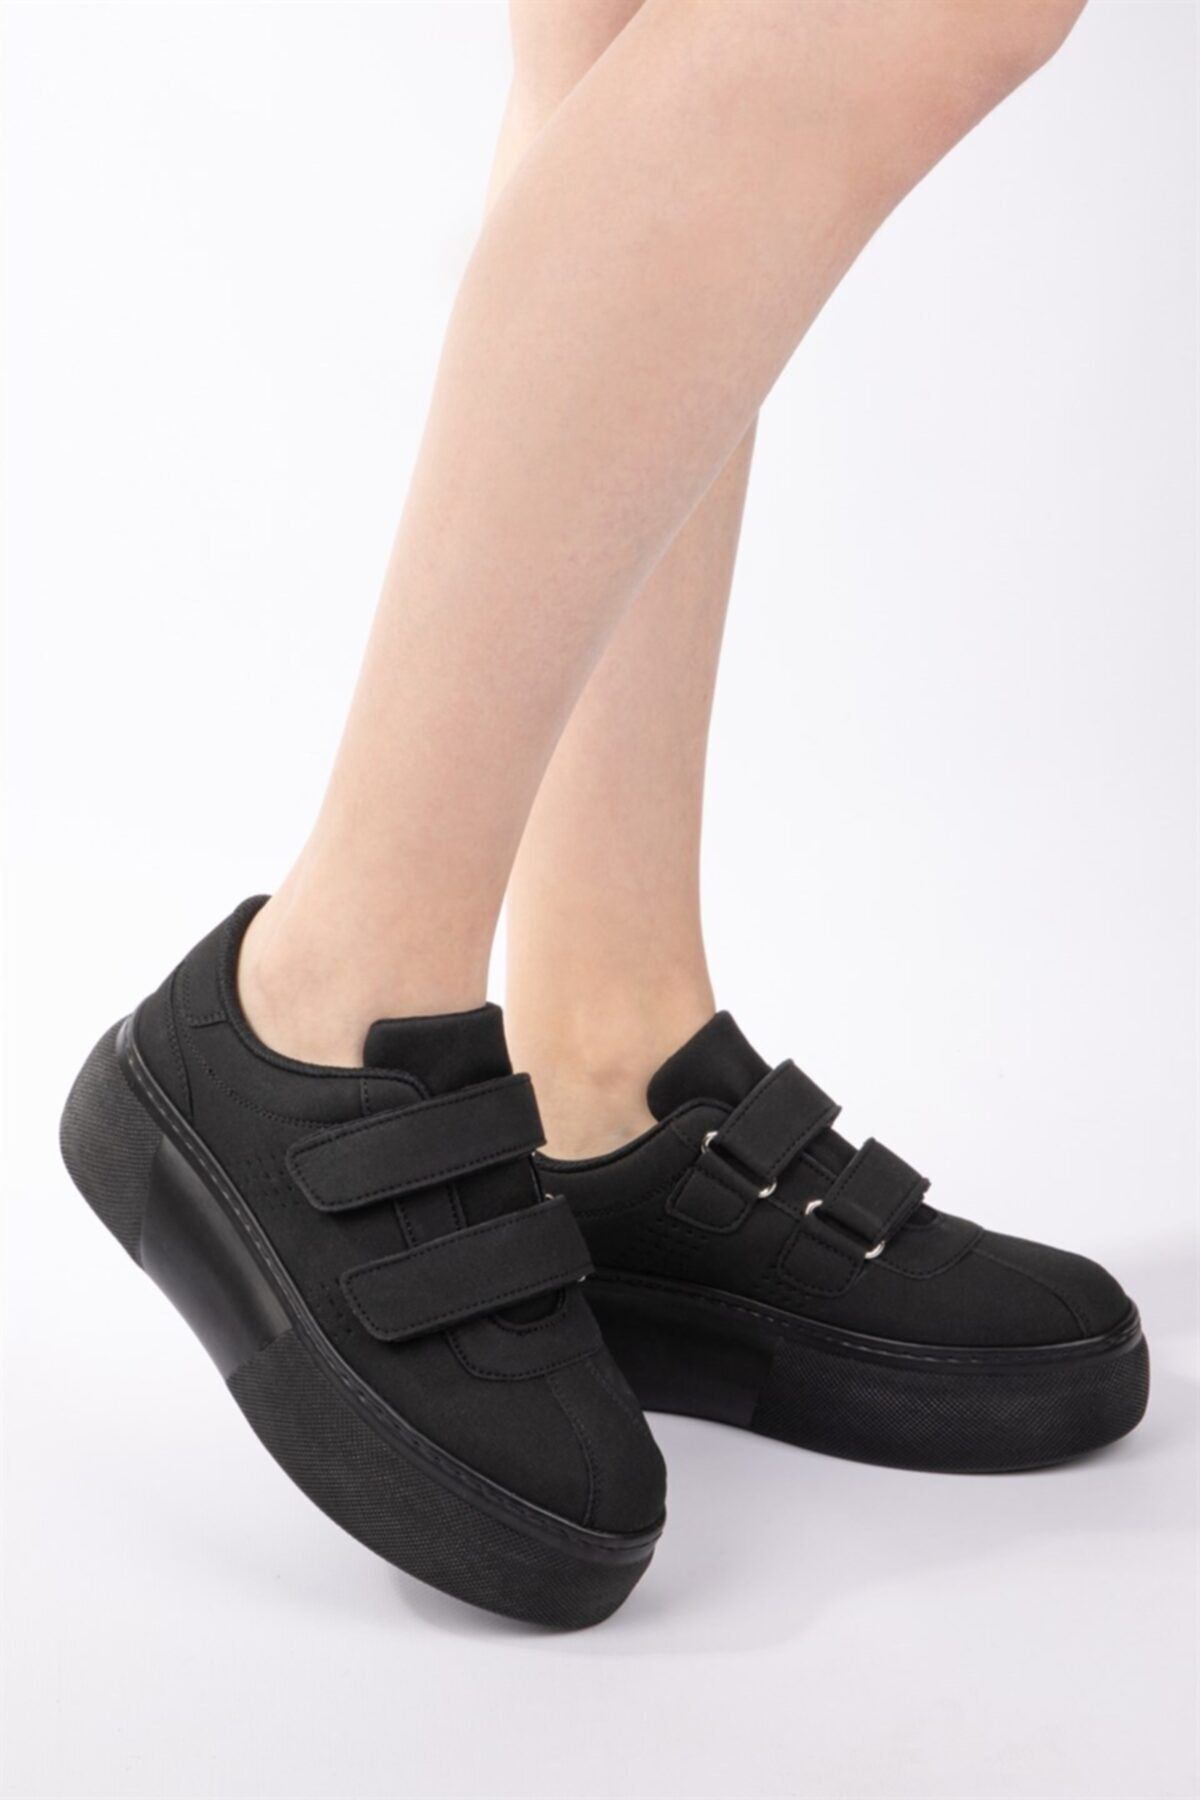 NAVYSIDE Kadın Siyah Nubuk Cırt Cırtlı Sneaker Yüksek Tabanlı Bantlı Spor Ayakkabı